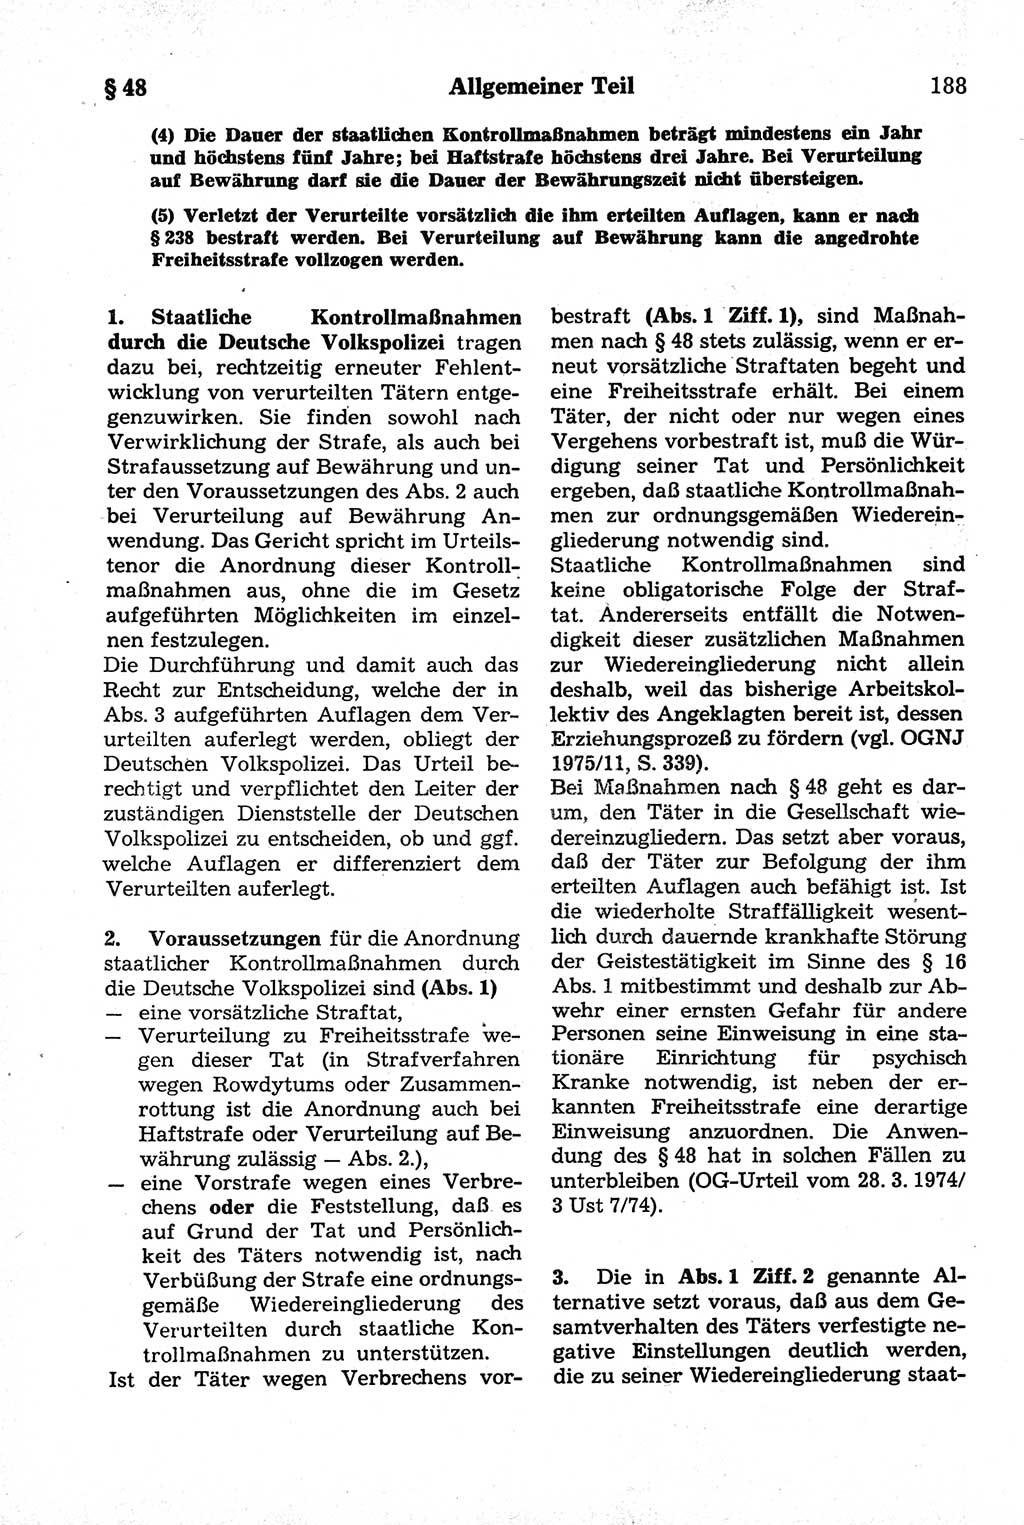 Strafrecht der Deutschen Demokratischen Republik (DDR), Kommentar zum Strafgesetzbuch (StGB) 1981, Seite 188 (Strafr. DDR Komm. StGB 1981, S. 188)